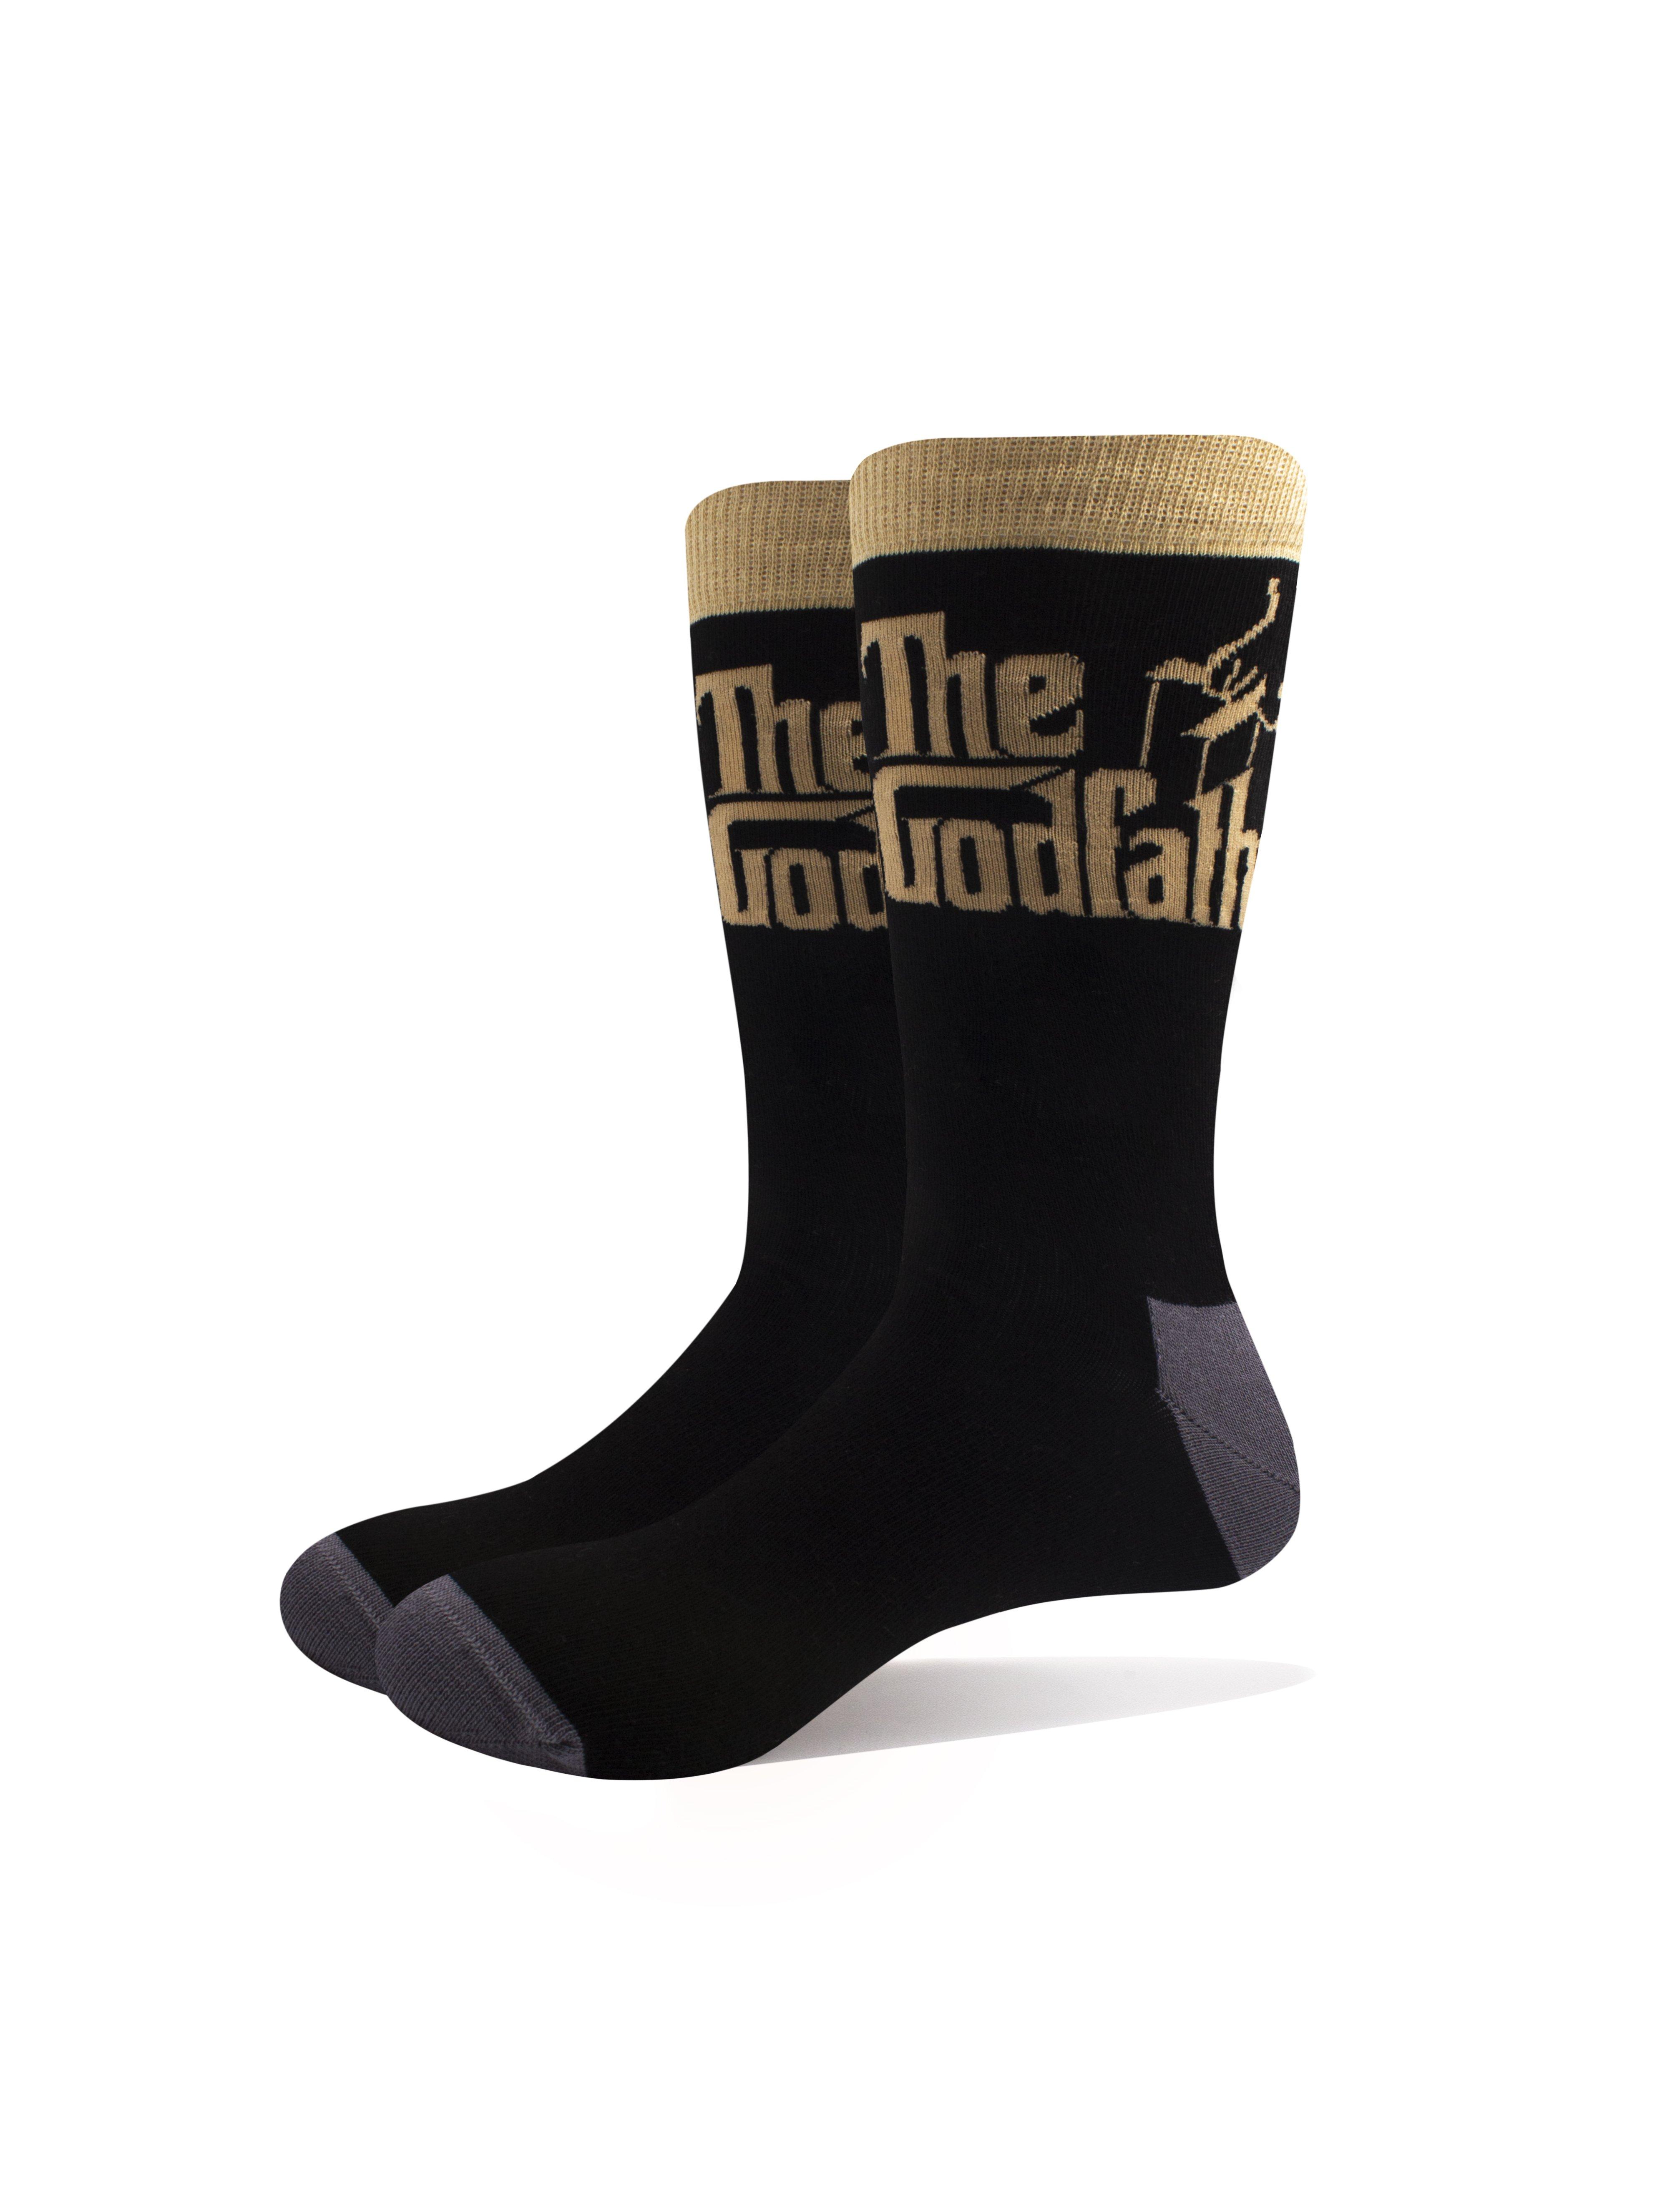 Ankle Socks Logo Gold new Official Unisex Black (UK SIZE 7 - 11)